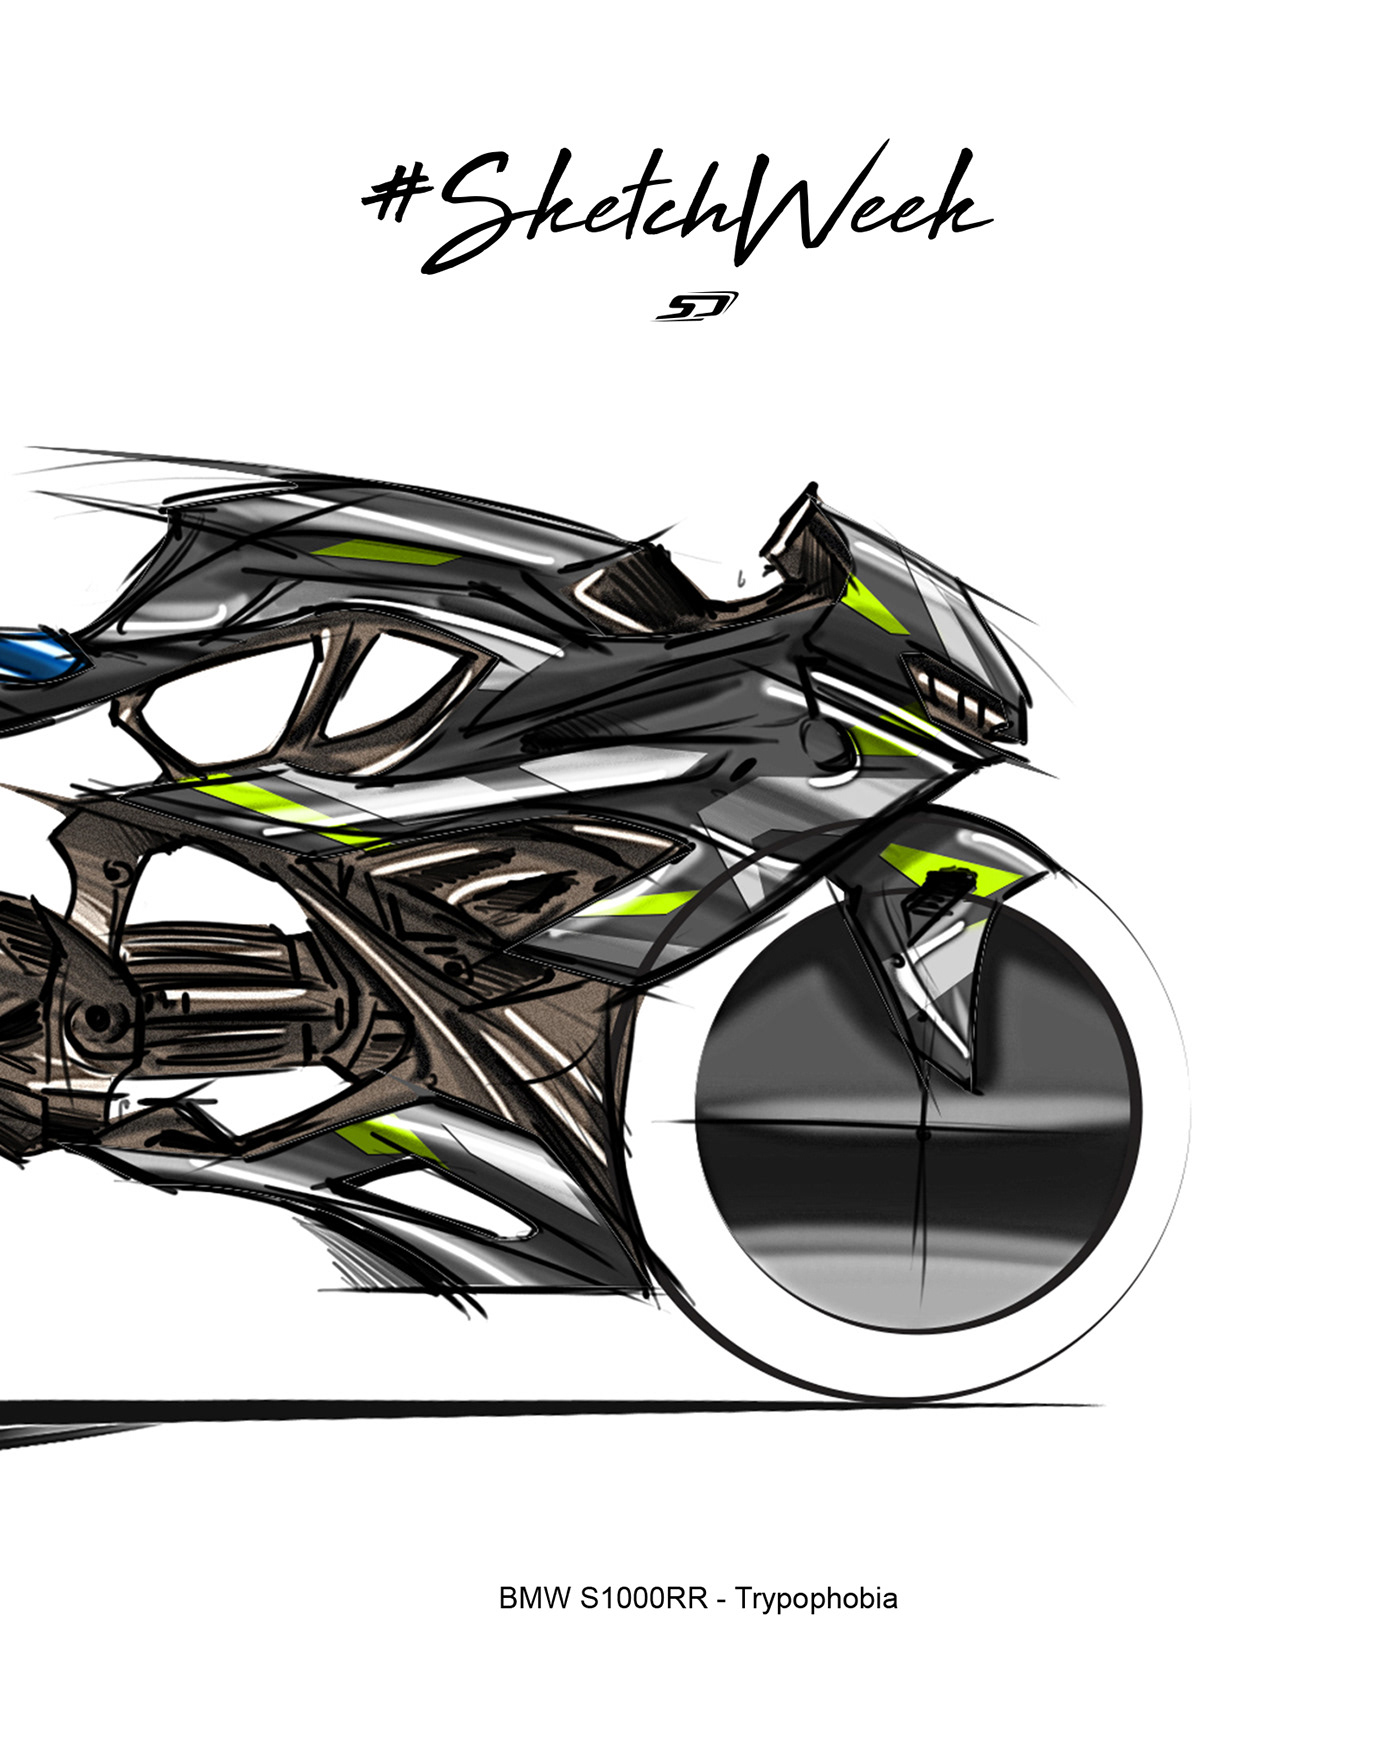 art BMW BMW Motorrad BMW S1000RR designer Simon Designs sketch trypophobia trypophobia art